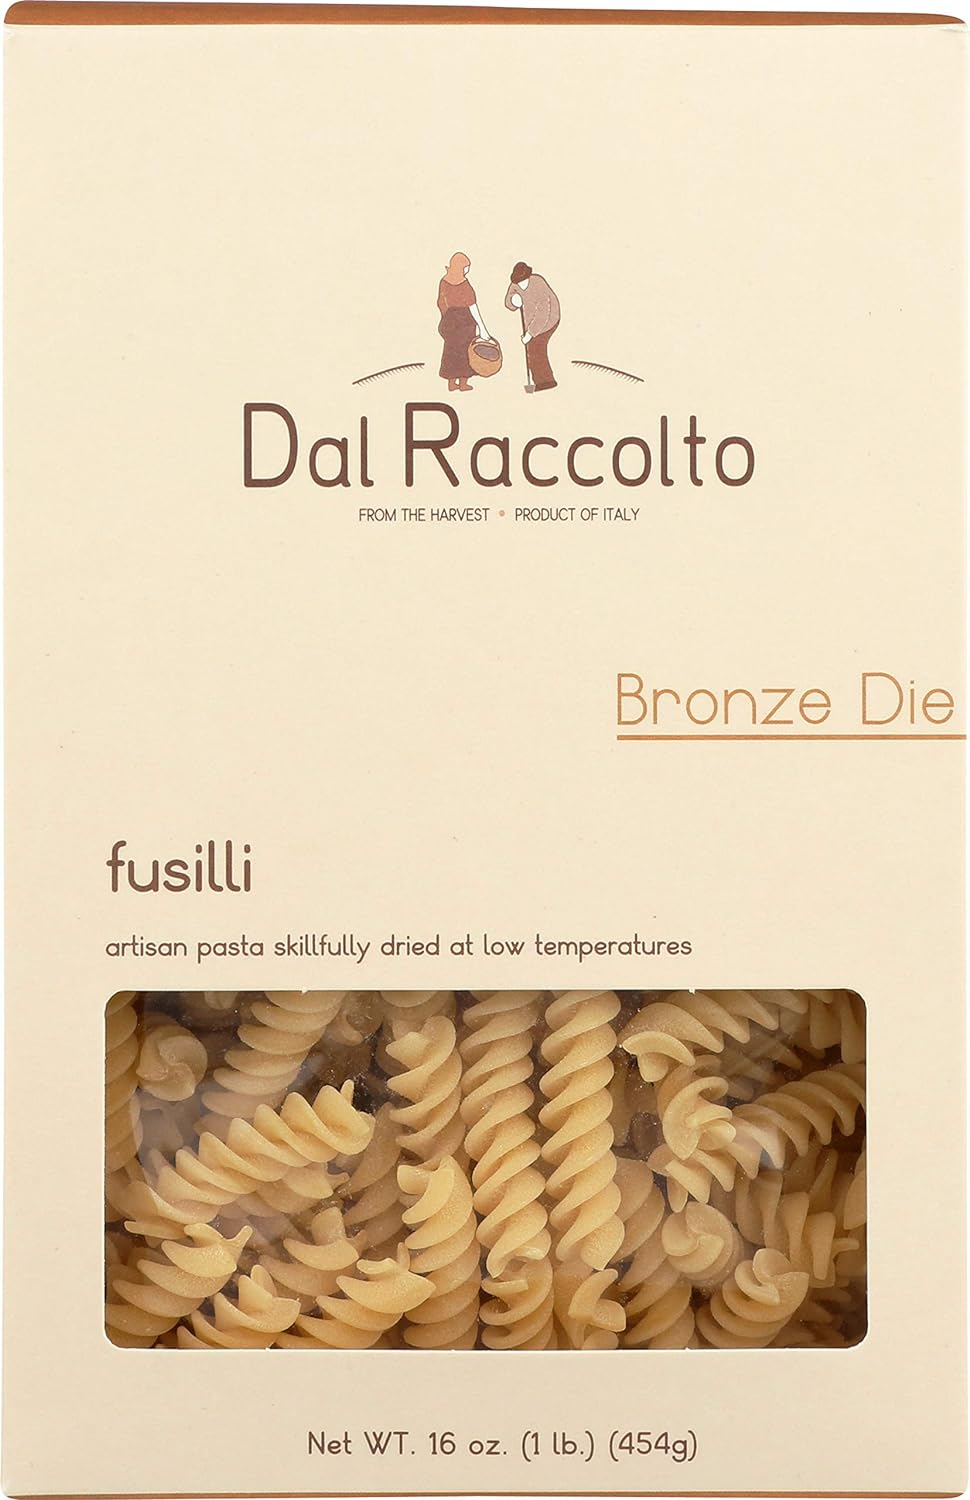 Dal Raccolto Bronze Die Pasta - Fusilli, 1 lb Box